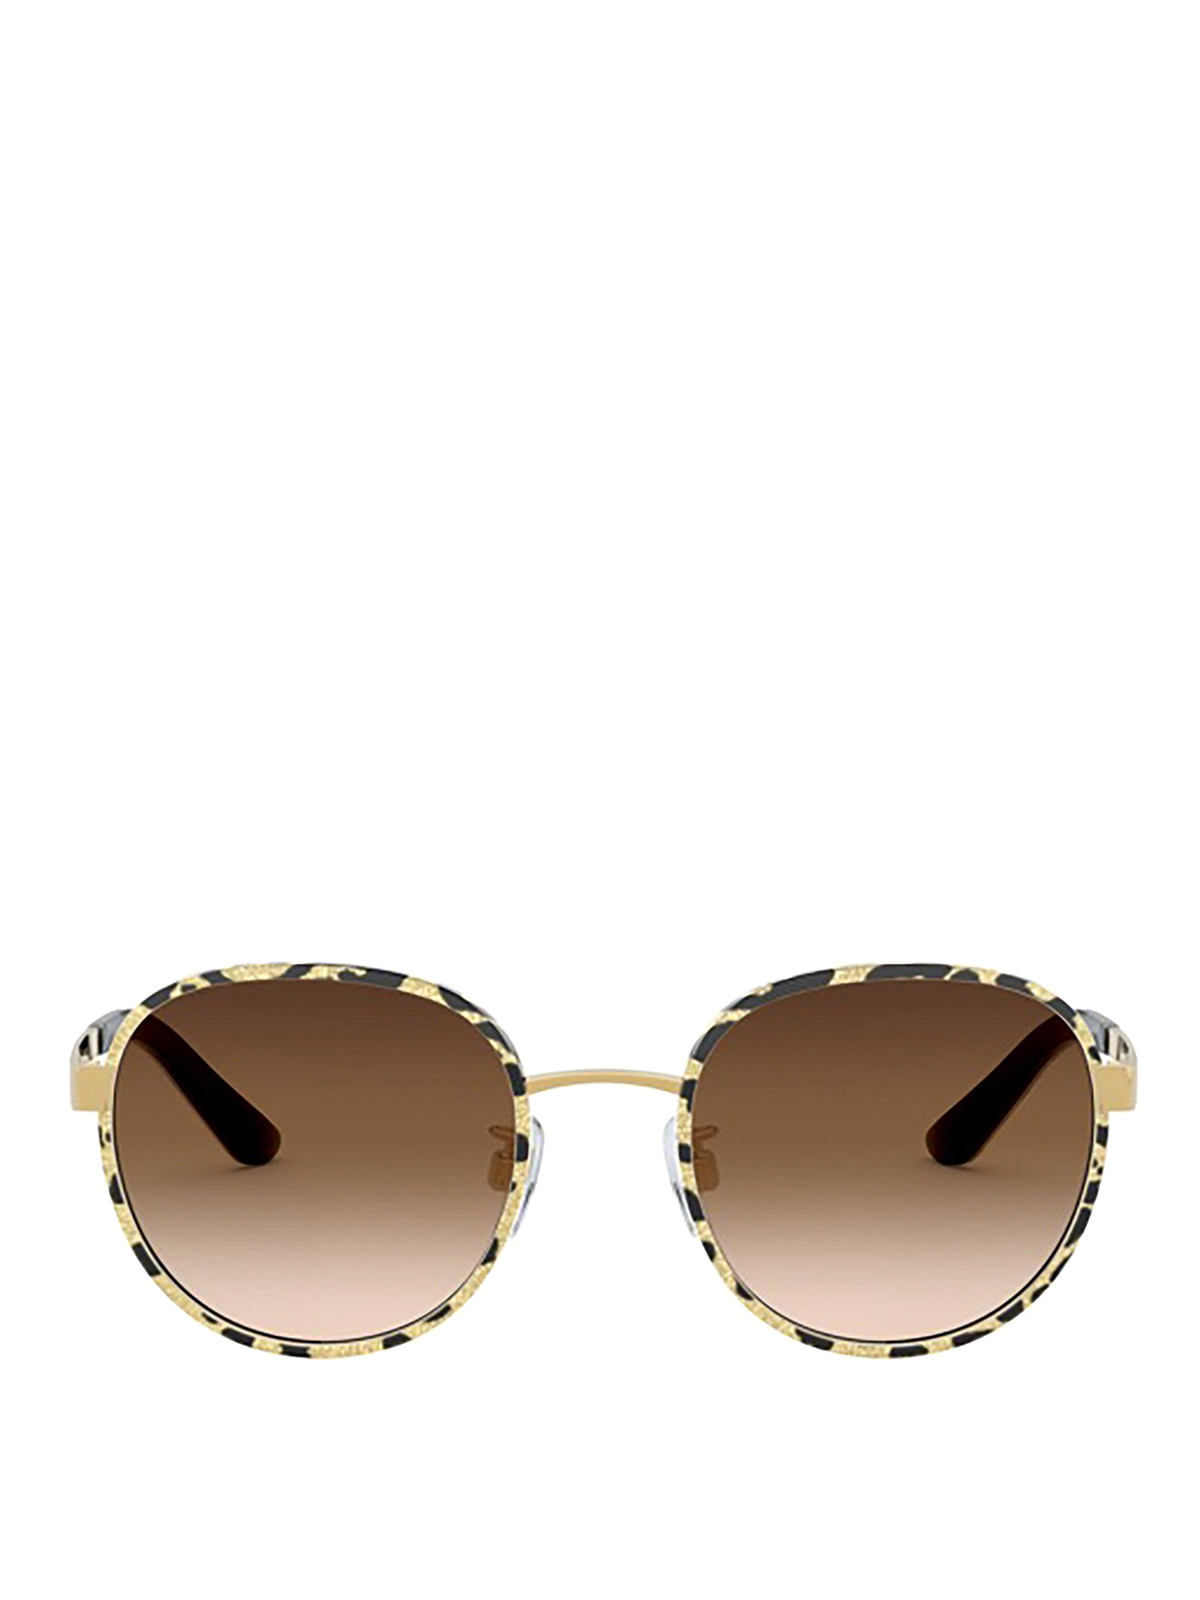 Sunglasses Dolce & Gabbana - Print Family sunglasses - VG2227VM2139V000